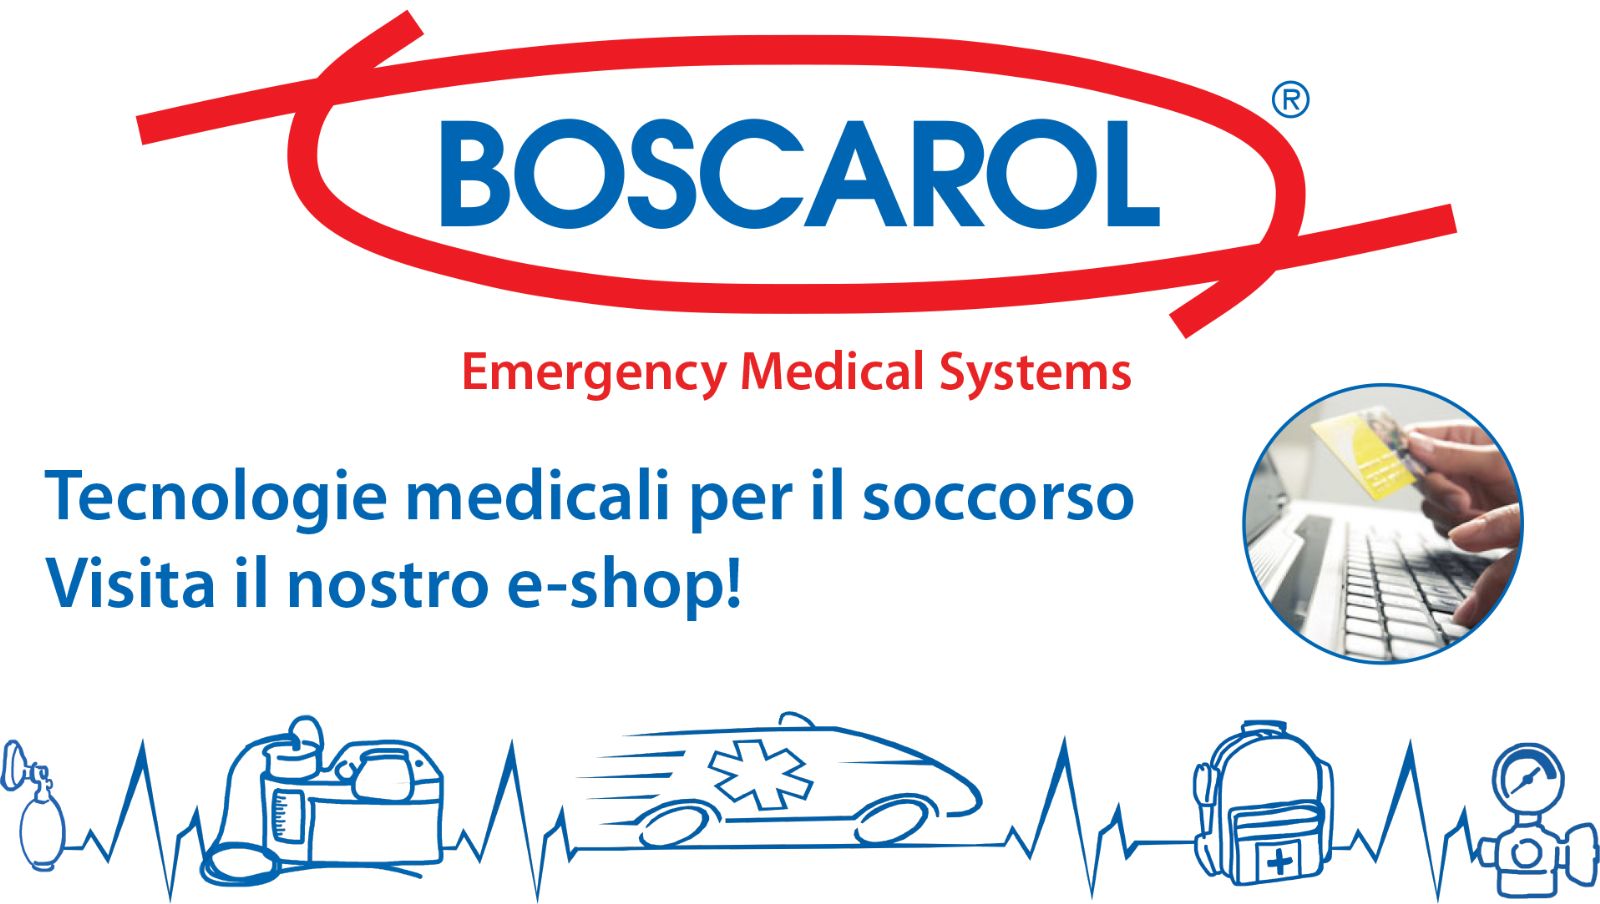 Boscarol - Emergency Medical System